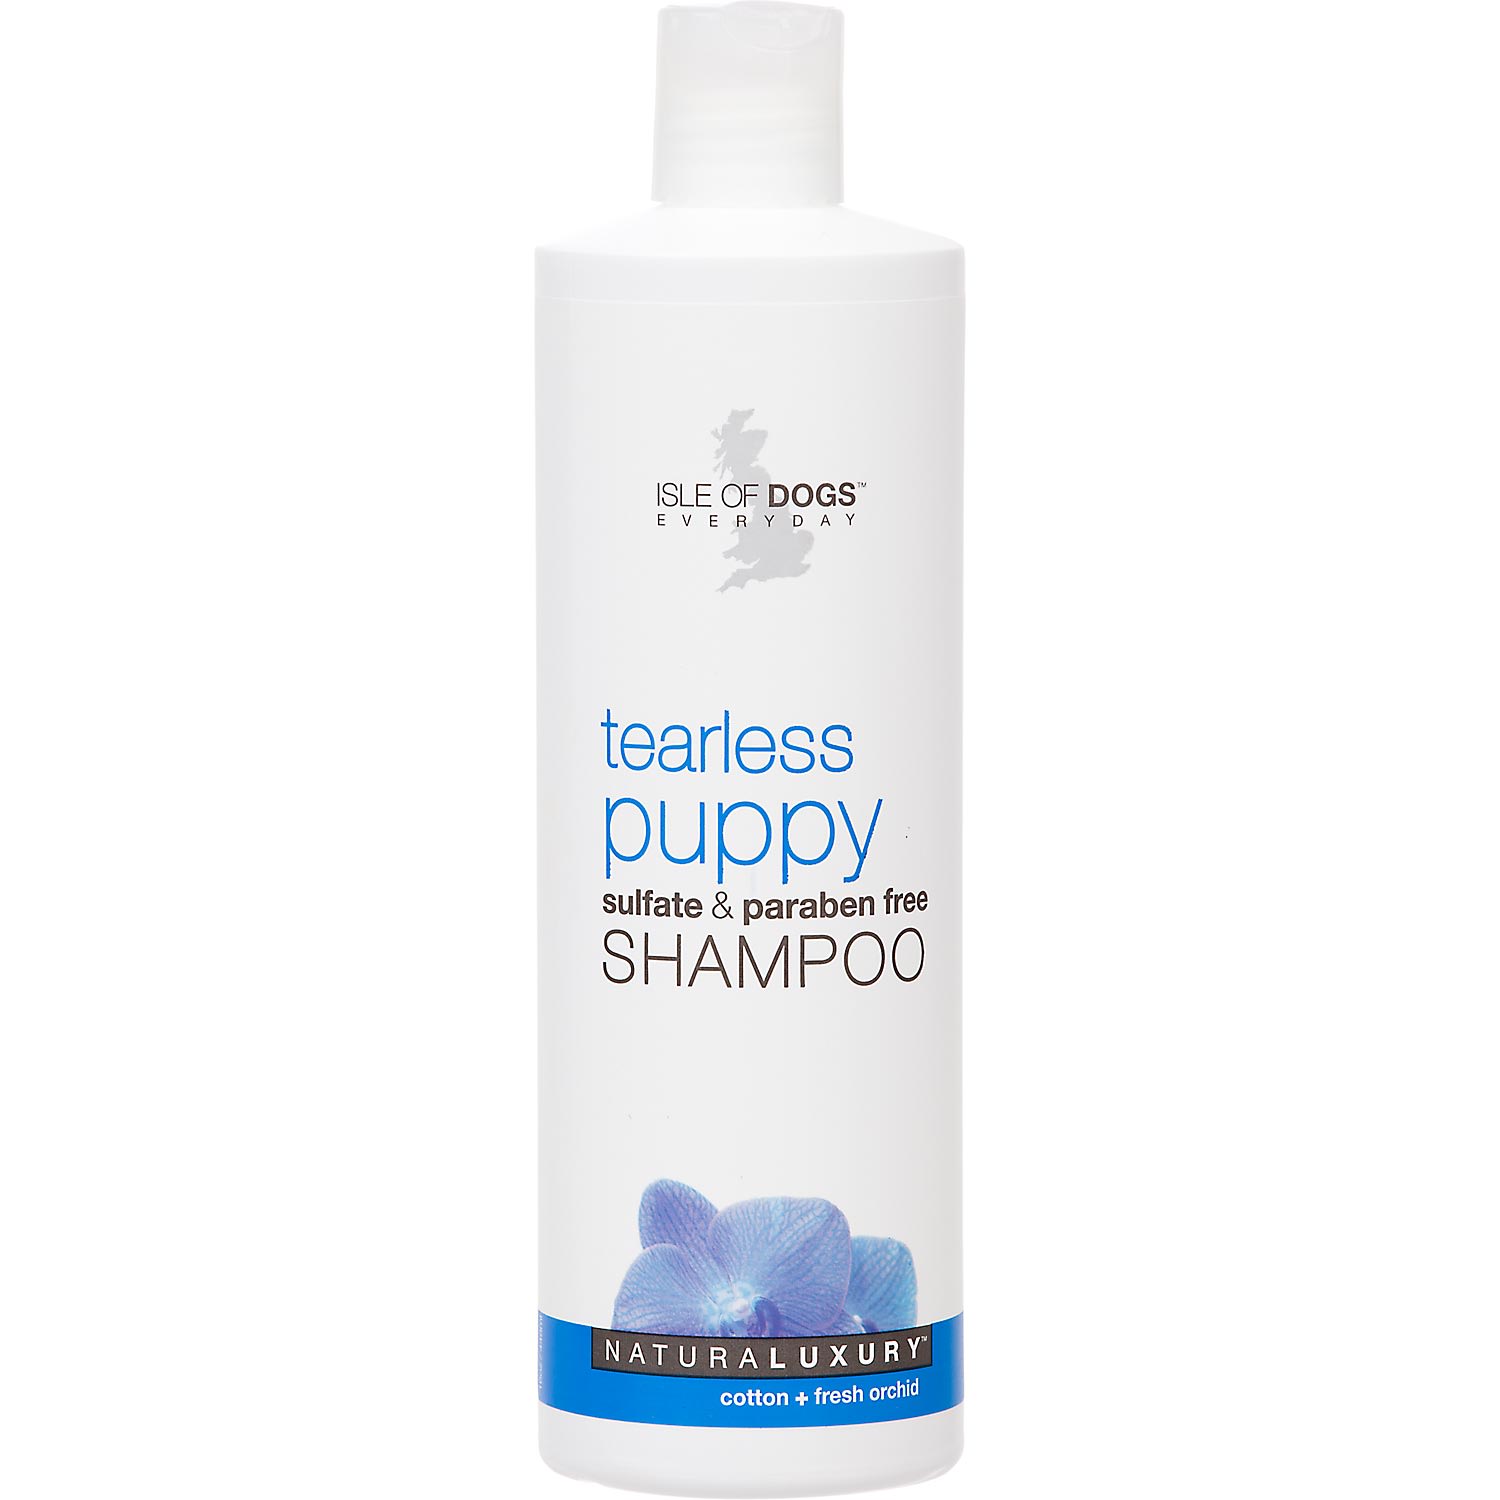 tearless dog shampoo